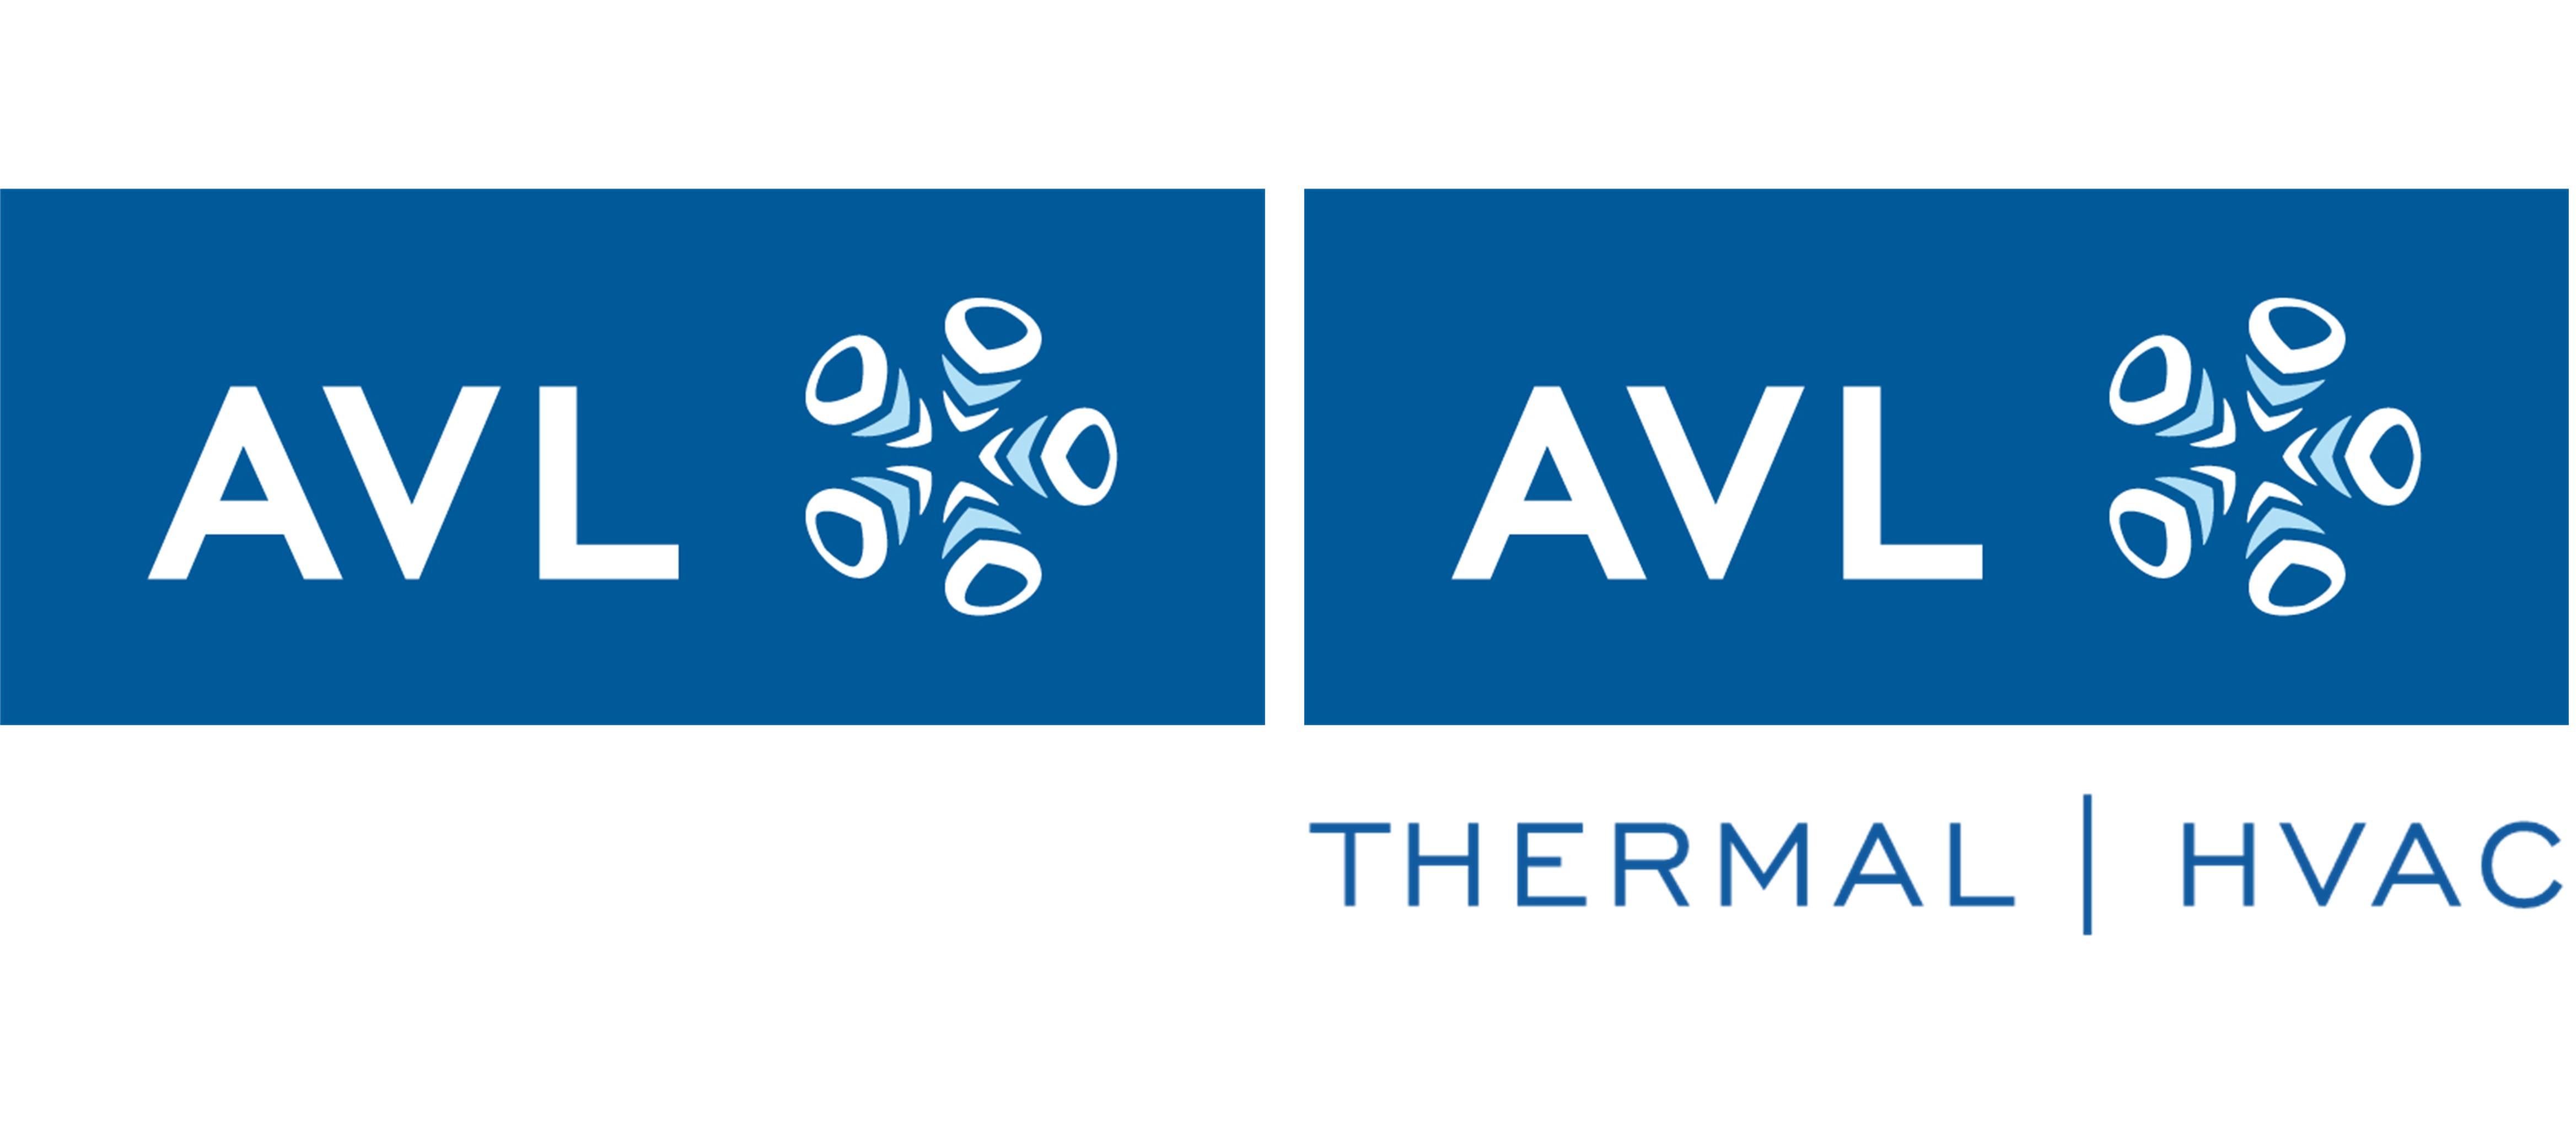 AVL logo & AVL Thermal | HVAC logo.